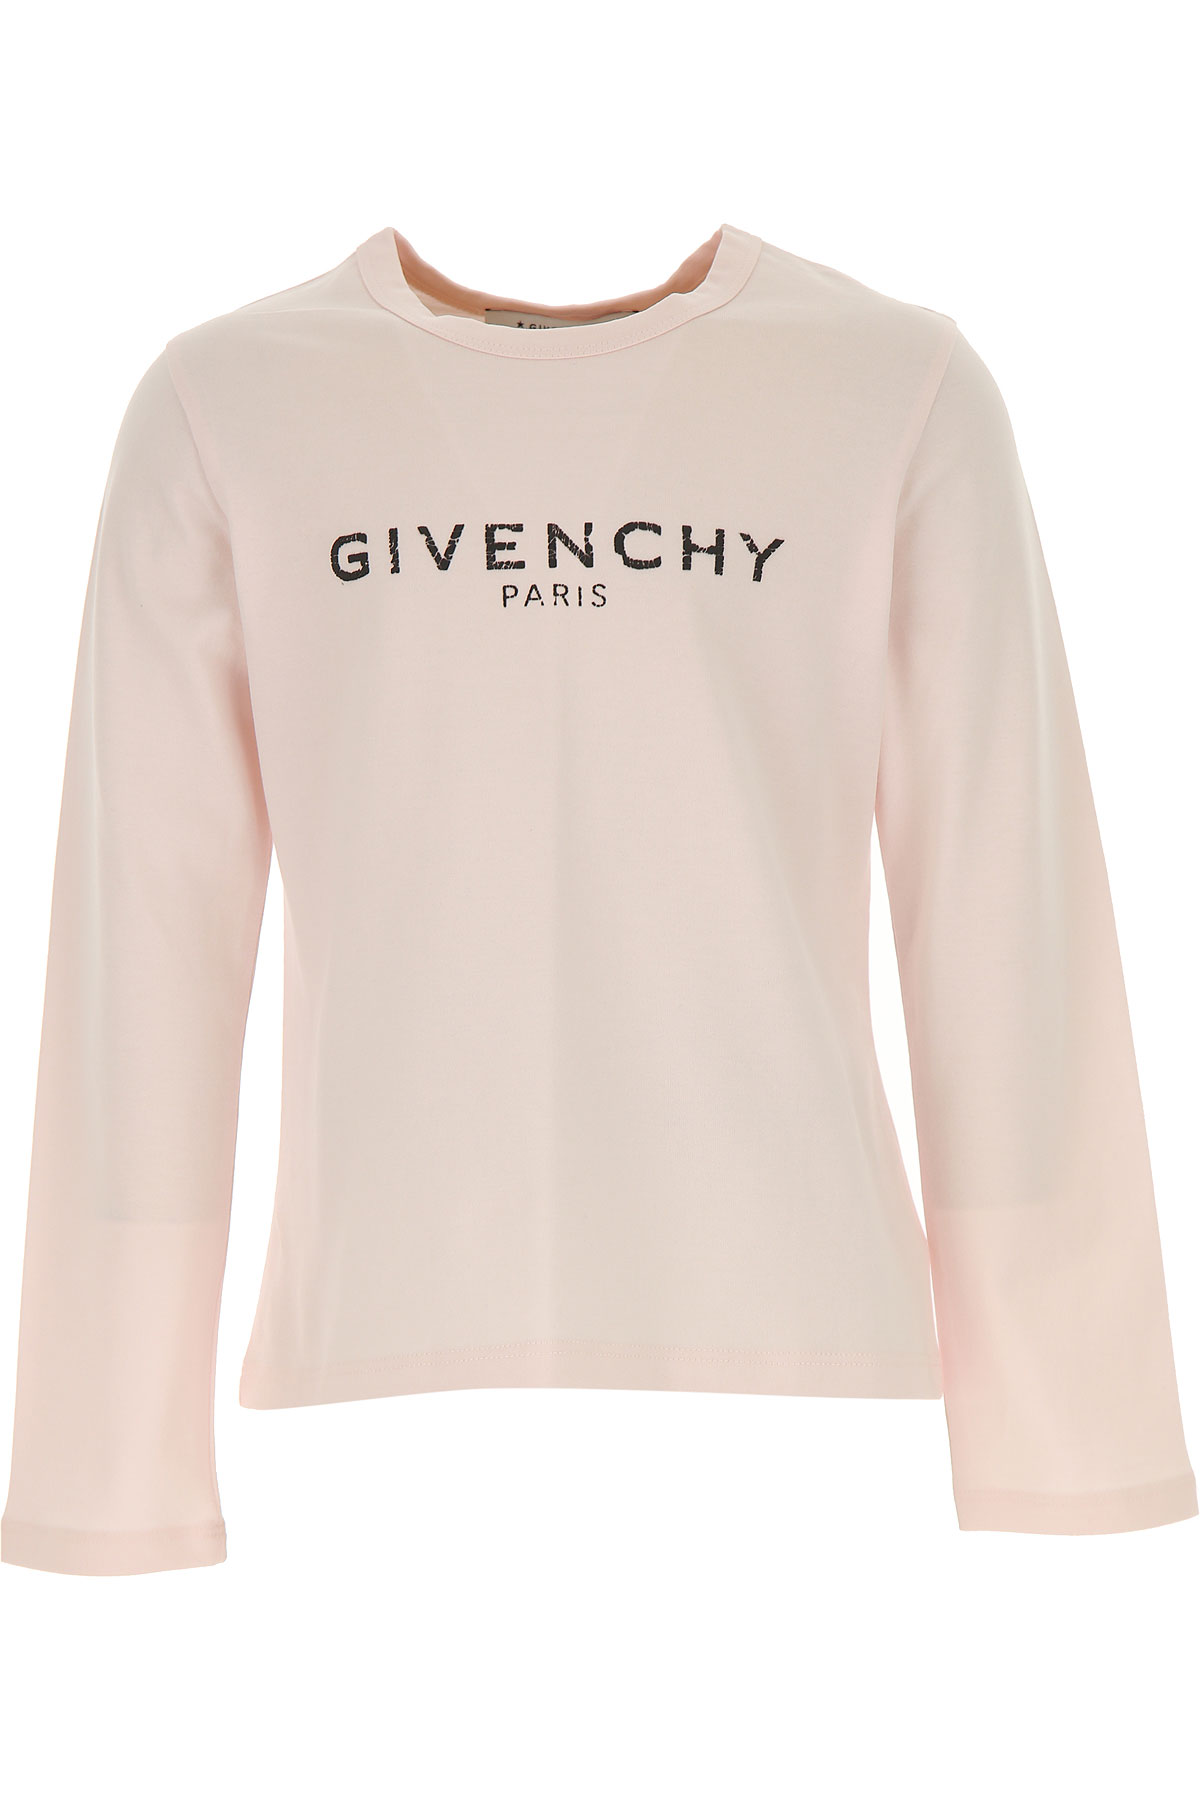 Givenchy Kinder T-Shirt für Mädchen, Hellpink, Baumwolle, 2017, 12Y 8Y